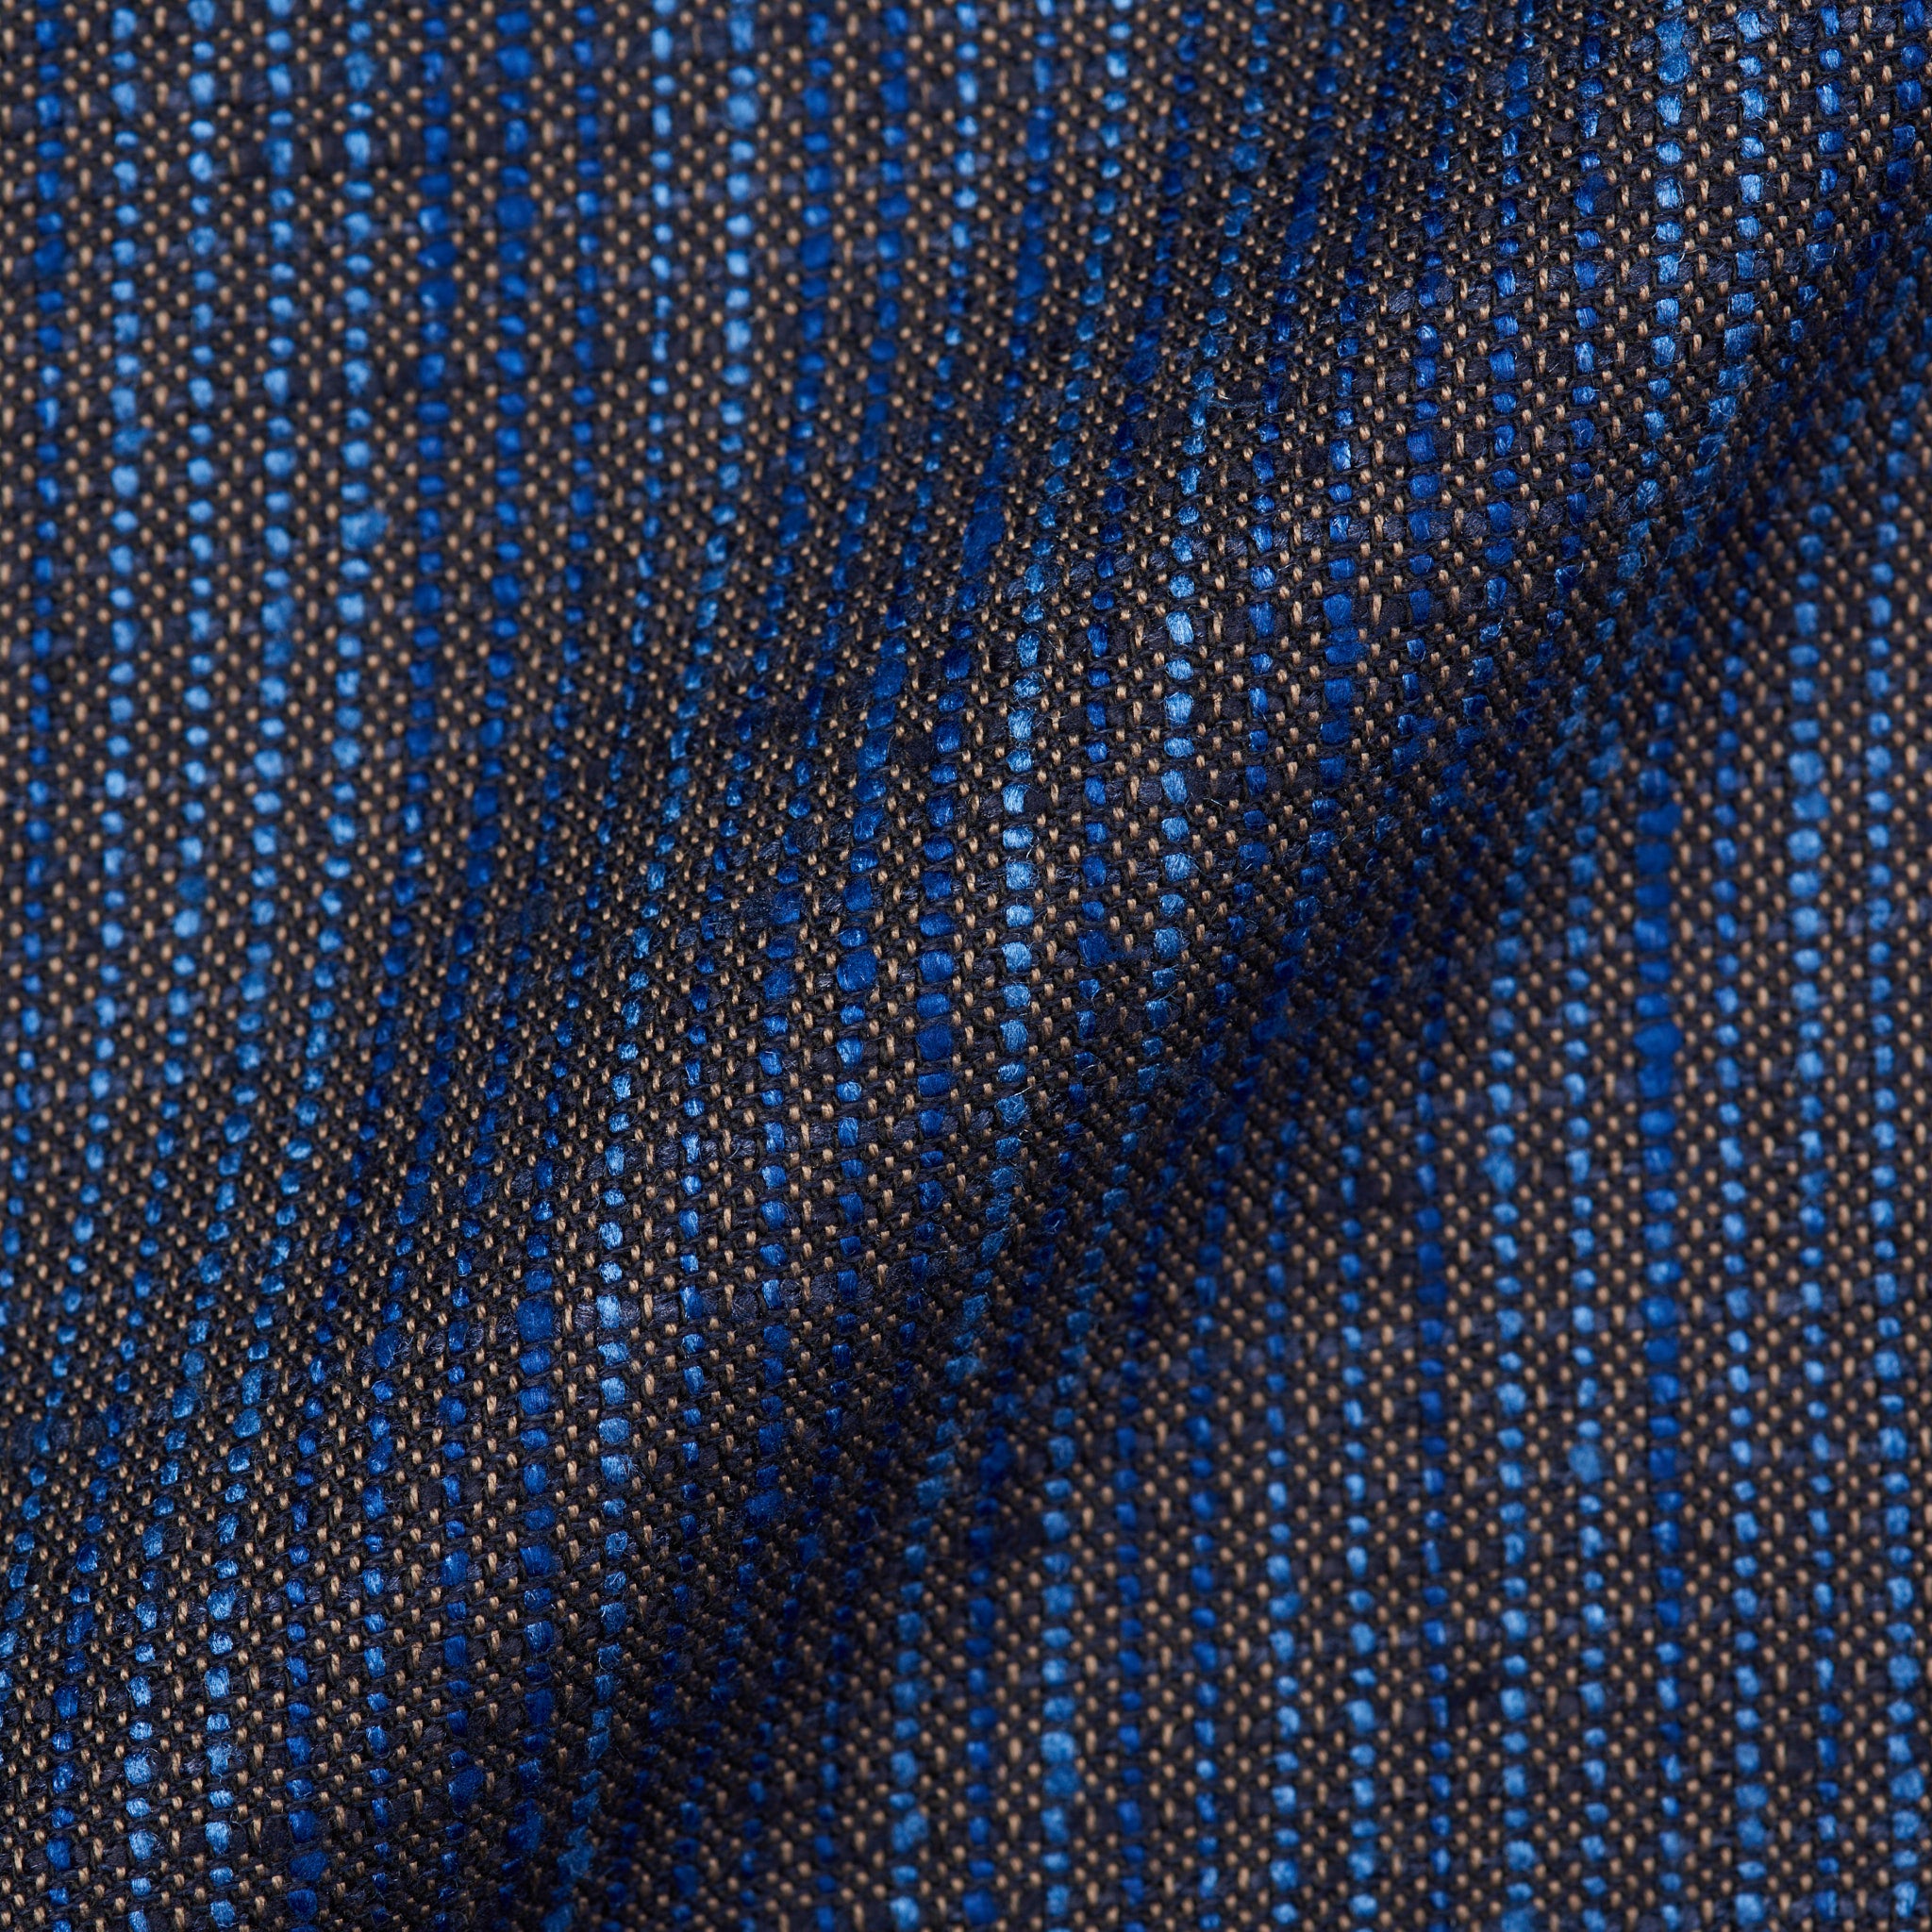 BERLUTI Paris "Brera" Blue Silk-Linen 1 Button Cotton Lined Jacket EU 54 US 44 S